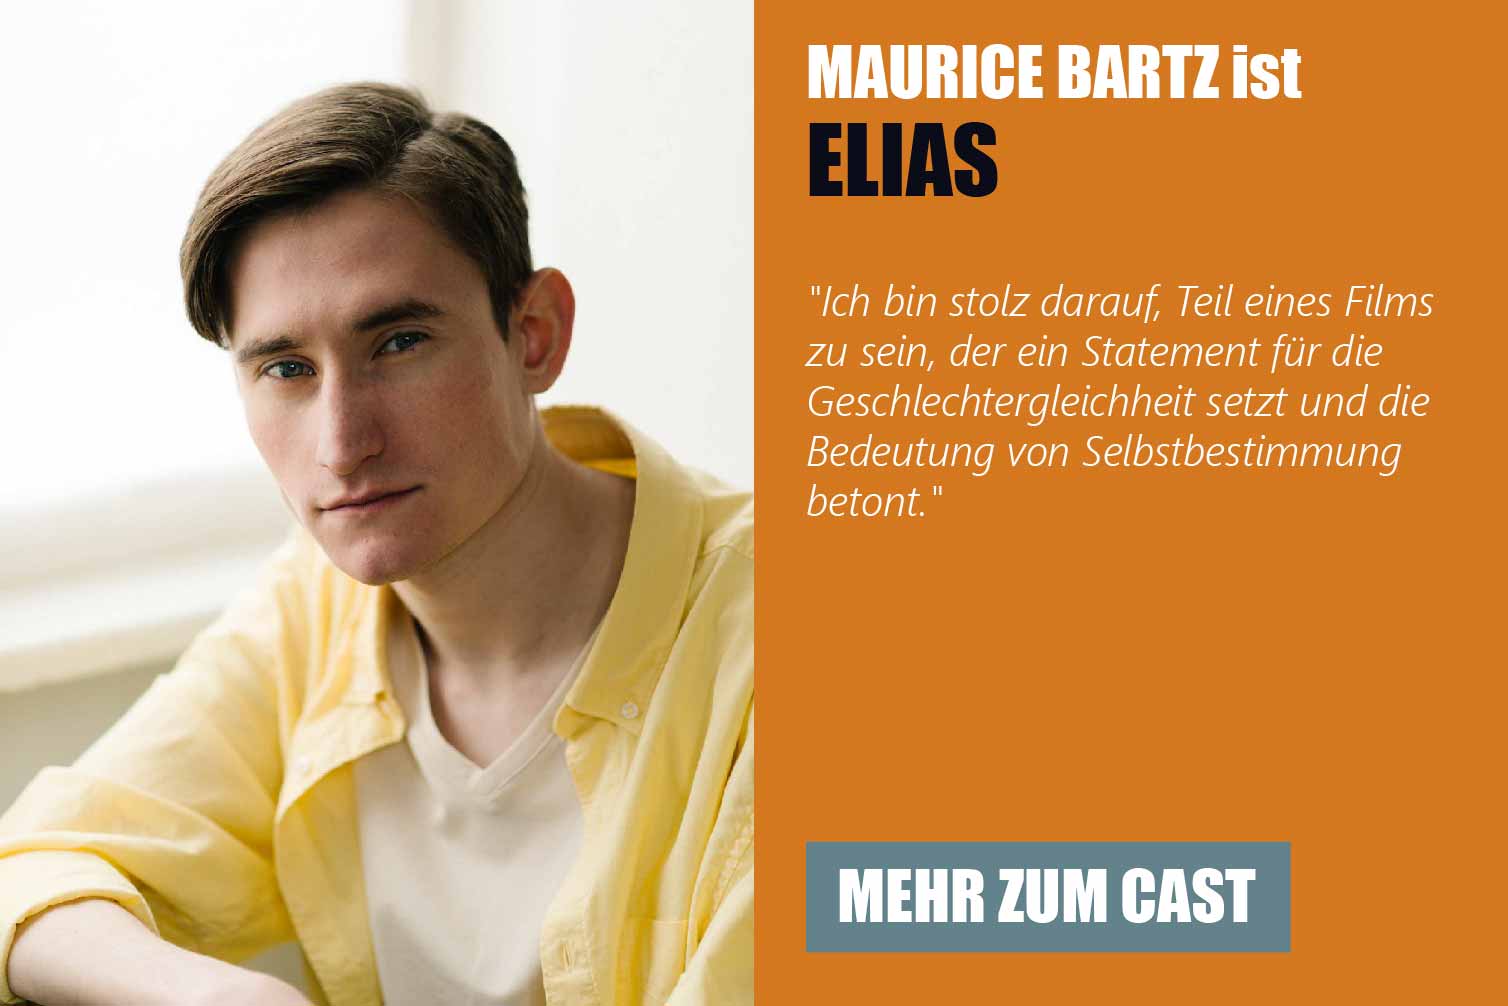 Der Schauspieler Maurice Bartz ist Elias